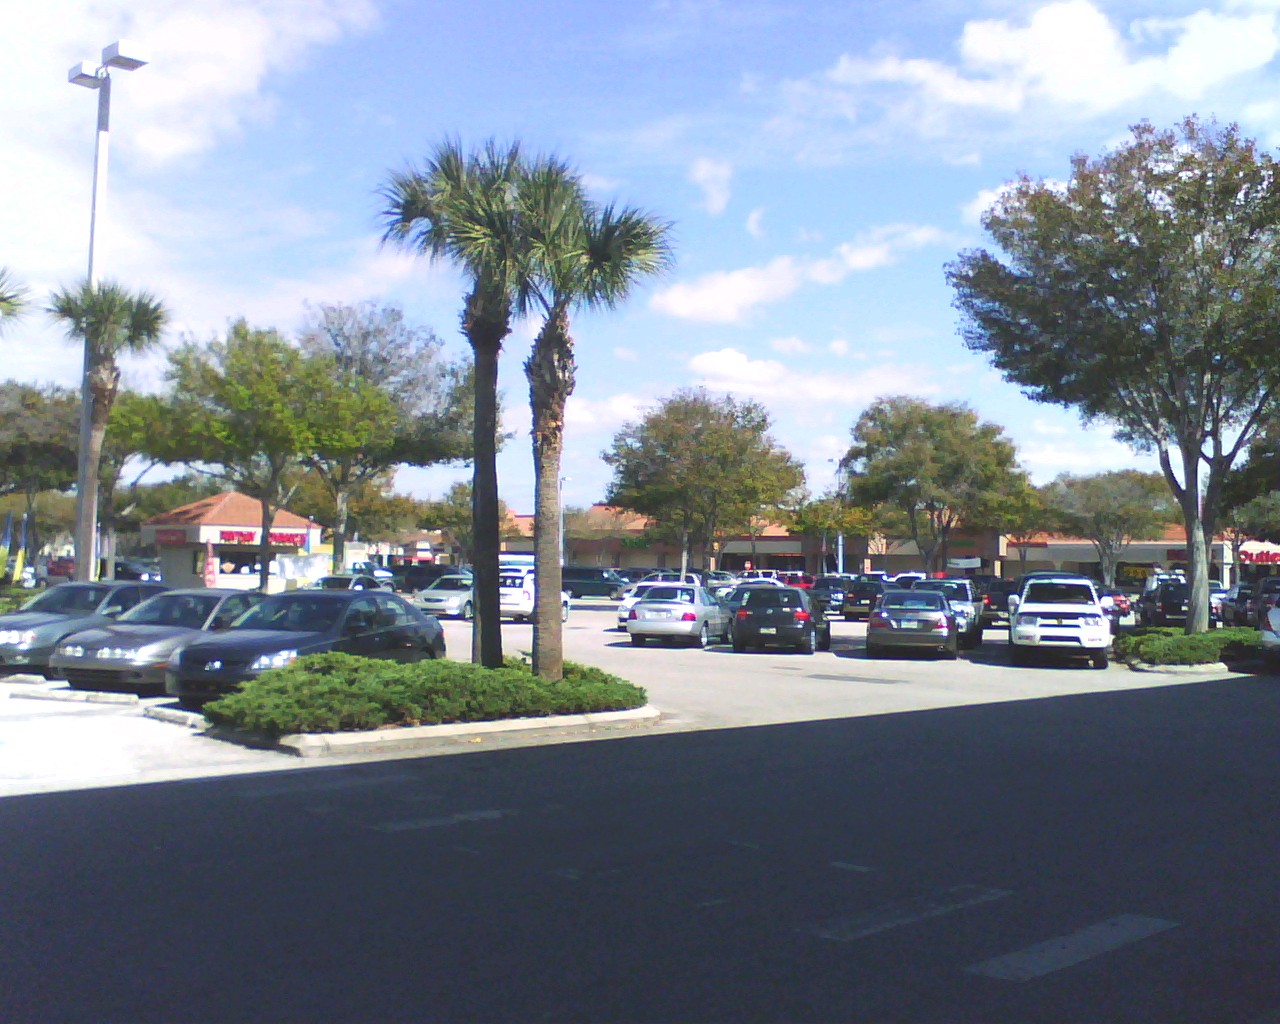 Britton Plaza Shopping Center - Wikipedia